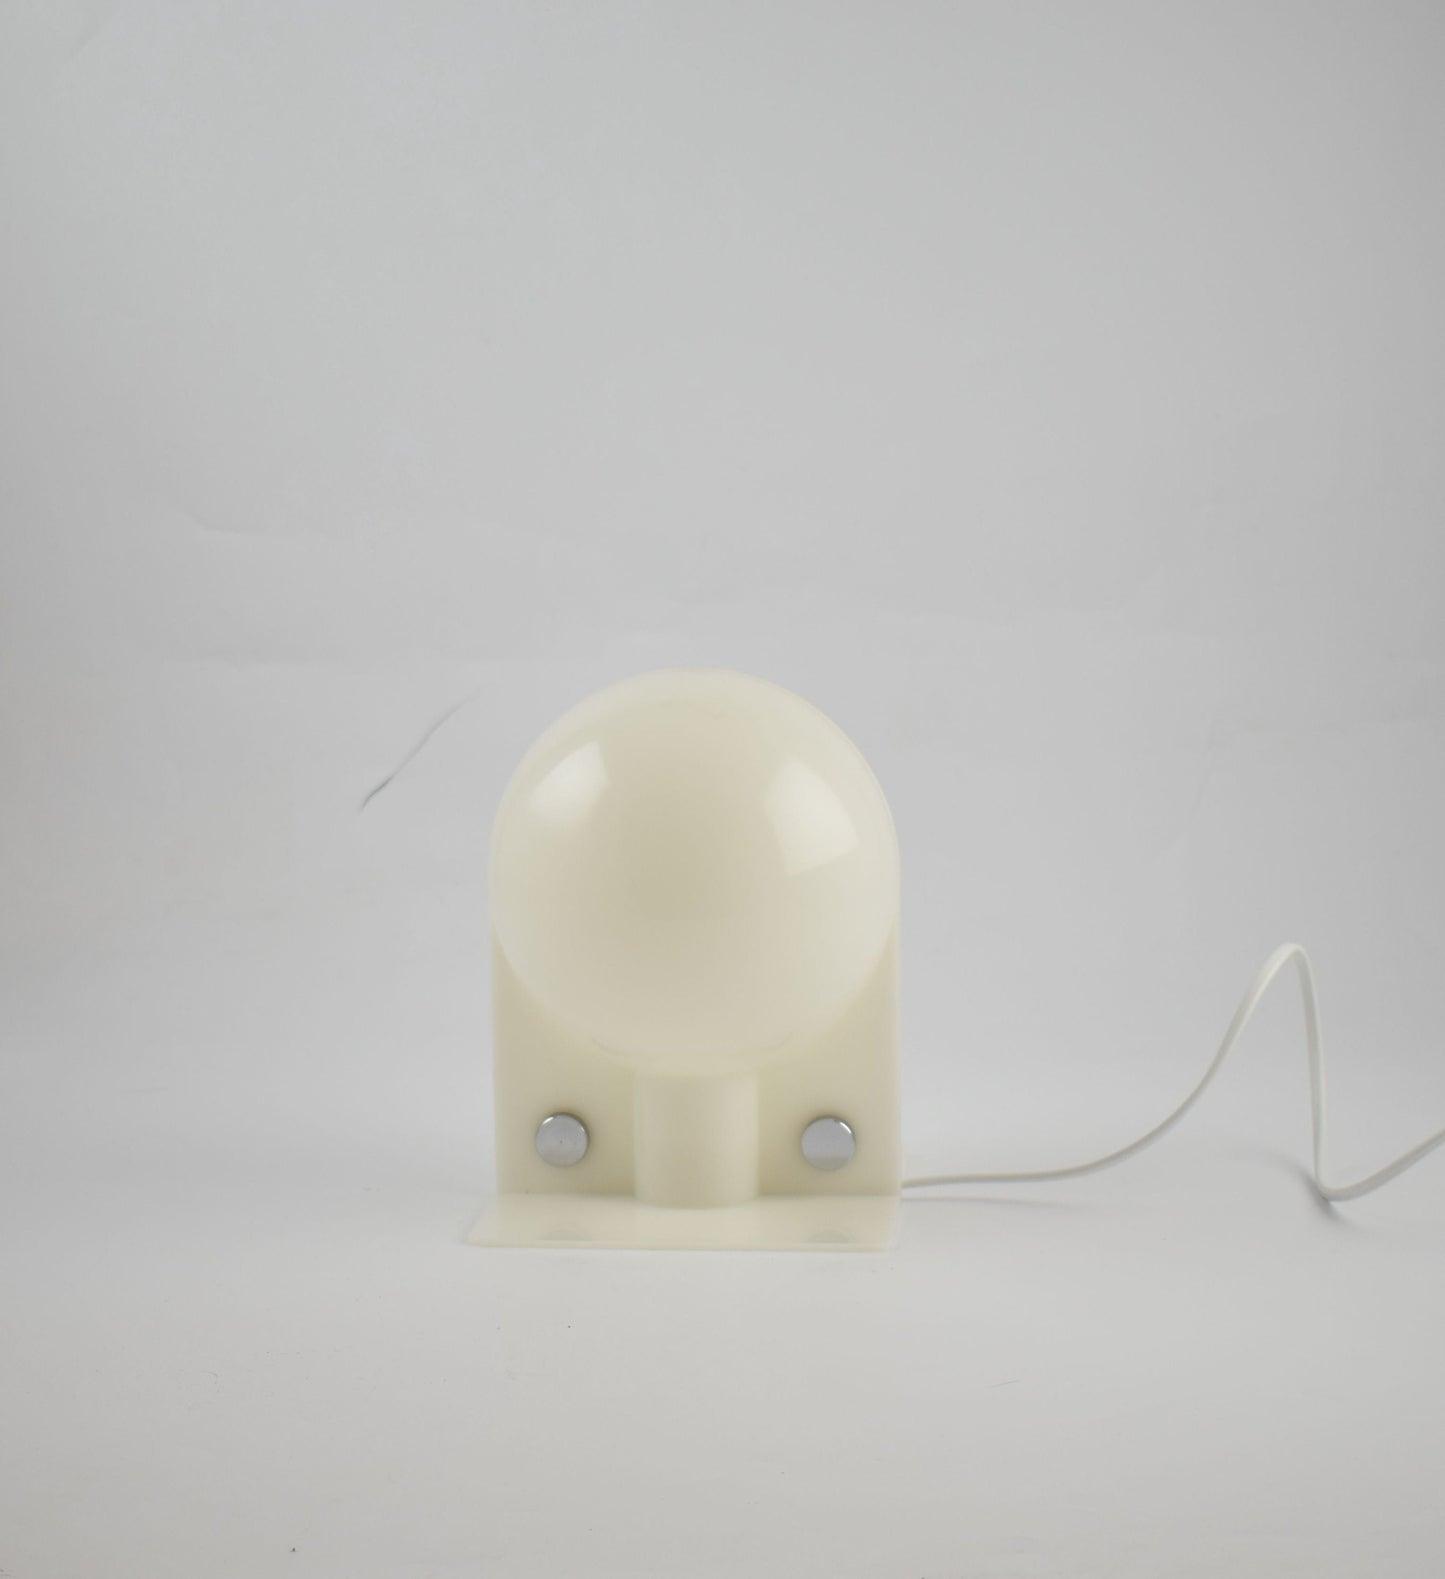 Harvey Guzzini bedtafellamp Sirio van Brazzoni &amp; Lampa Italiaans designicoon uit de jaren 70, wit